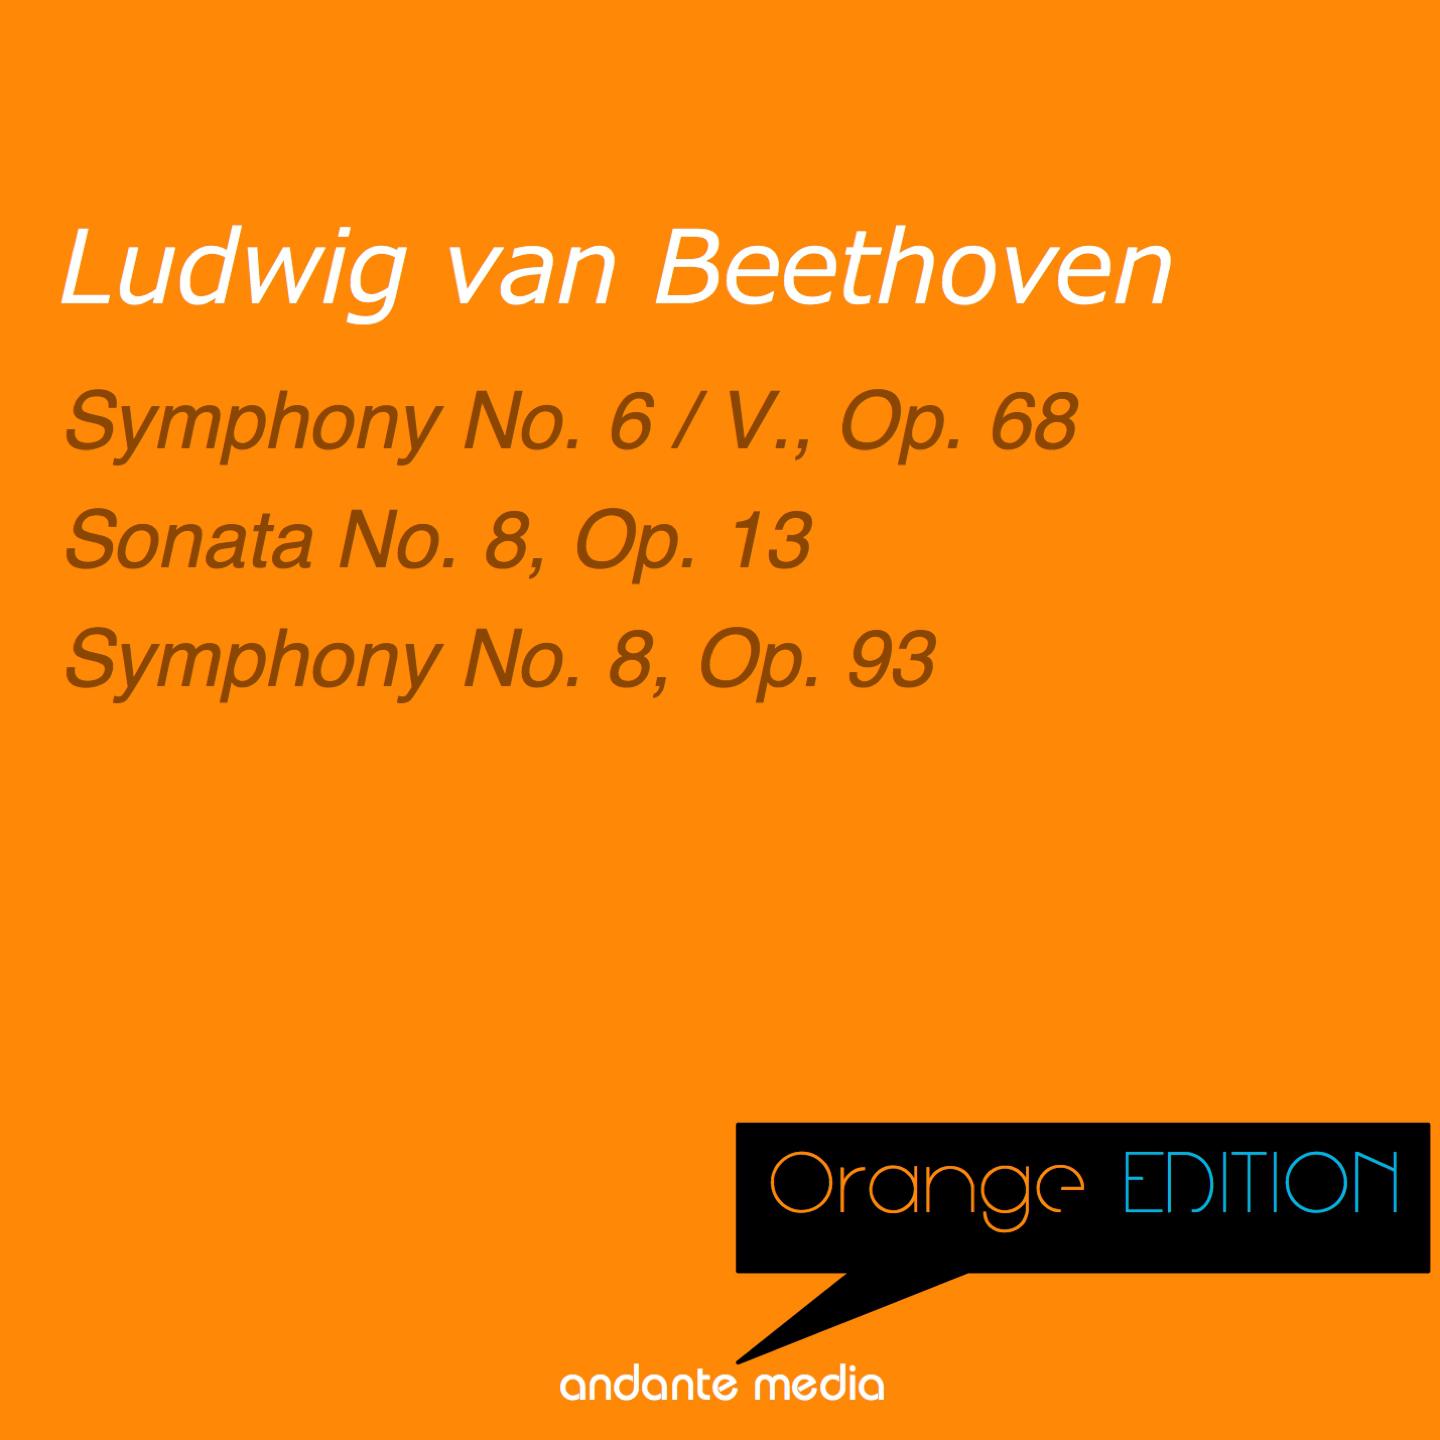 Orange Edition - Beethoven: Sonata No. 8, Op. 13 & Symphony No. 8, Op. 93